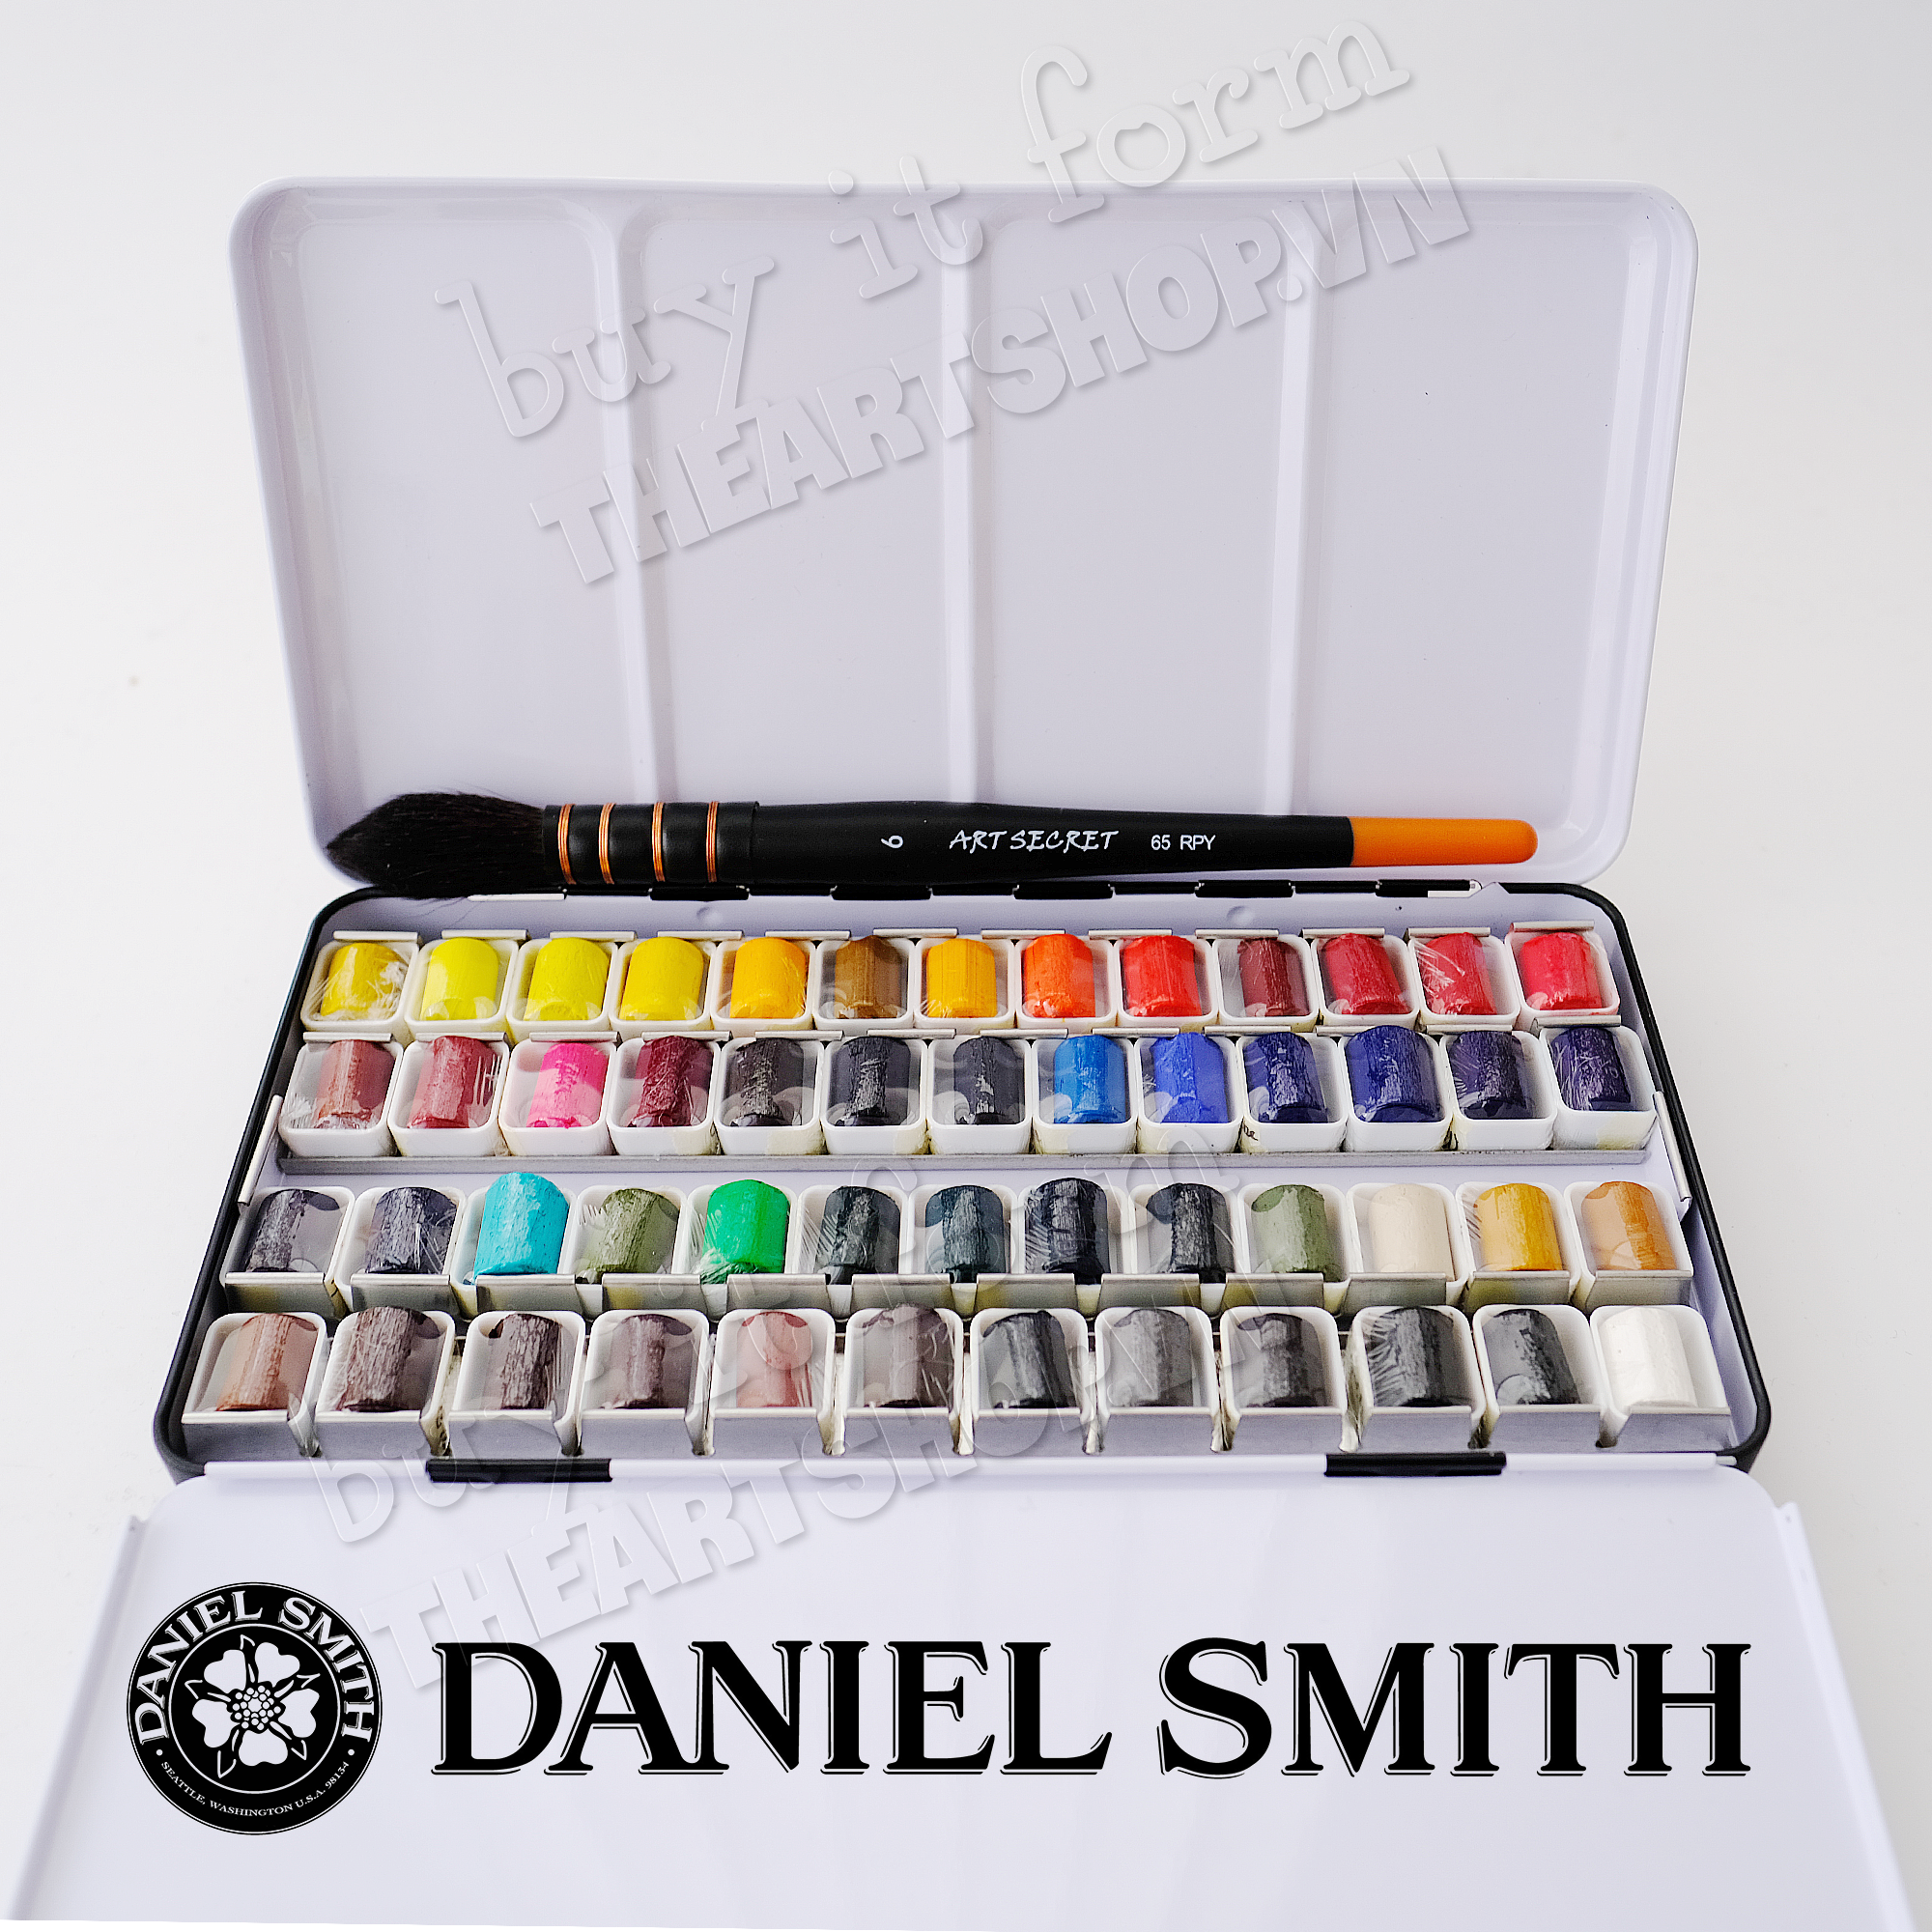 Màu nước DANIEL SMITH: Bạn muốn khám phá một thế giới hoàn toàn mới về màu nước? DANIEL SMITH là lựa chọn hoàn hảo, với hàng trăm tông màu phong phú, giàu sắc thái và độc đáo. Hãy cùng khám phá và đắm mình trong vẻ đẹp tuyệt vời của các loại màu nước này.